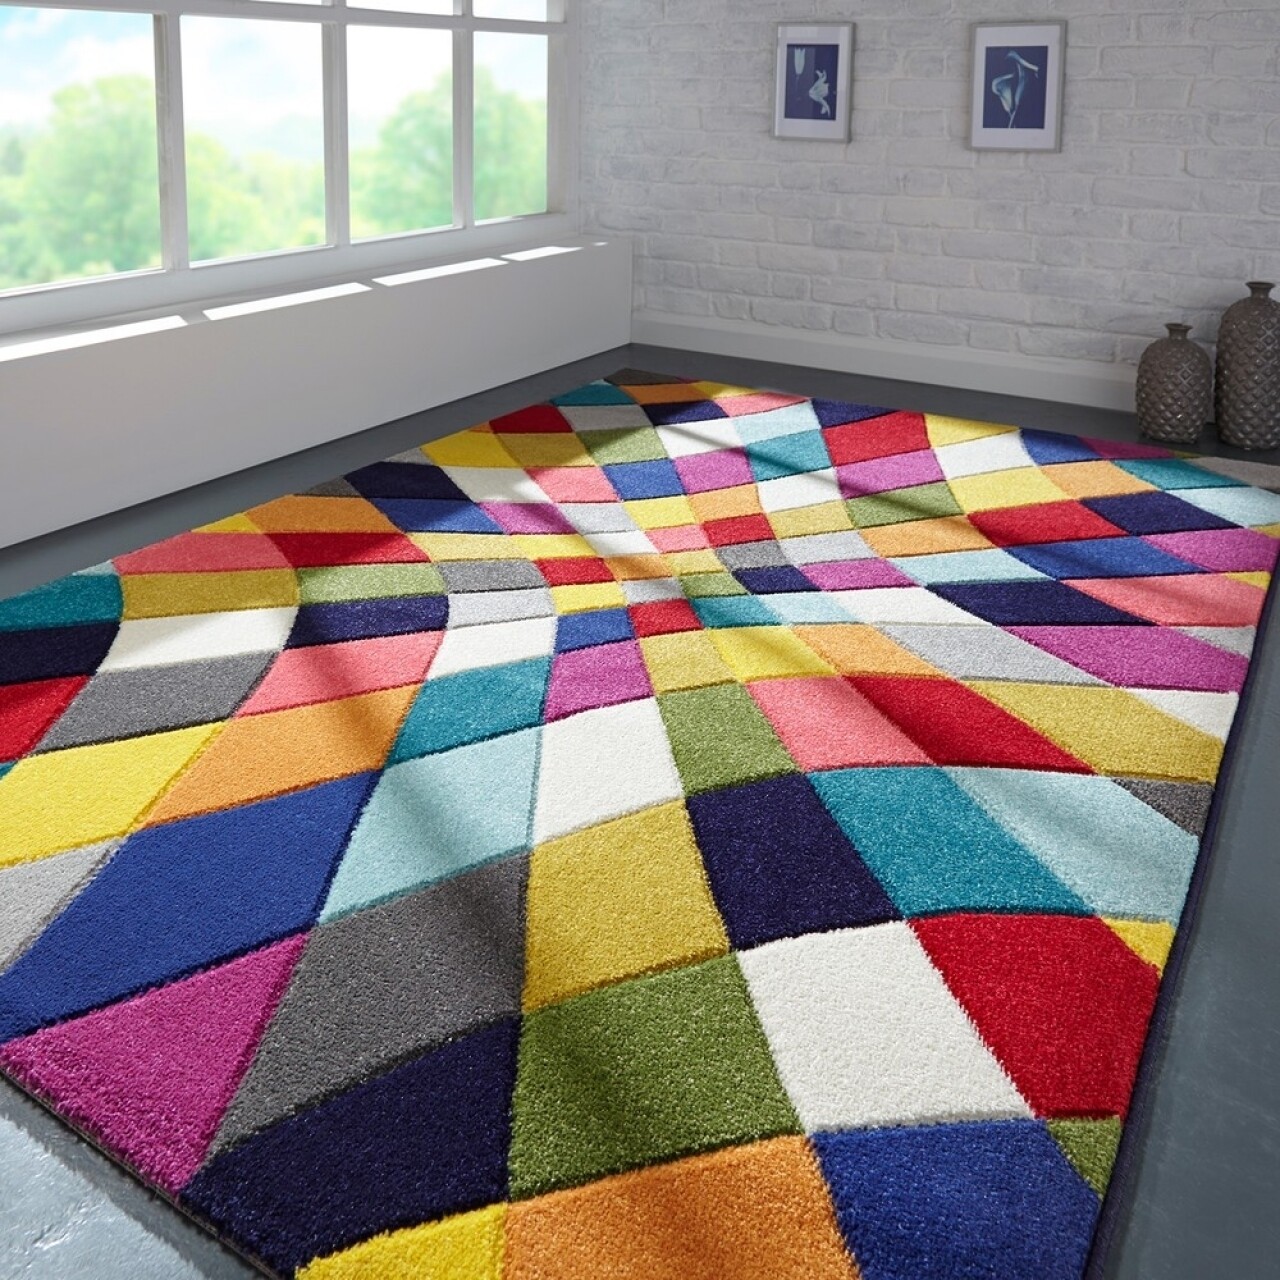 Flair Rugs Spectrum Rhumba szőnyeg, Flair szőnyegek, 120 x 170 cm, 100% polipropilén, többszínű